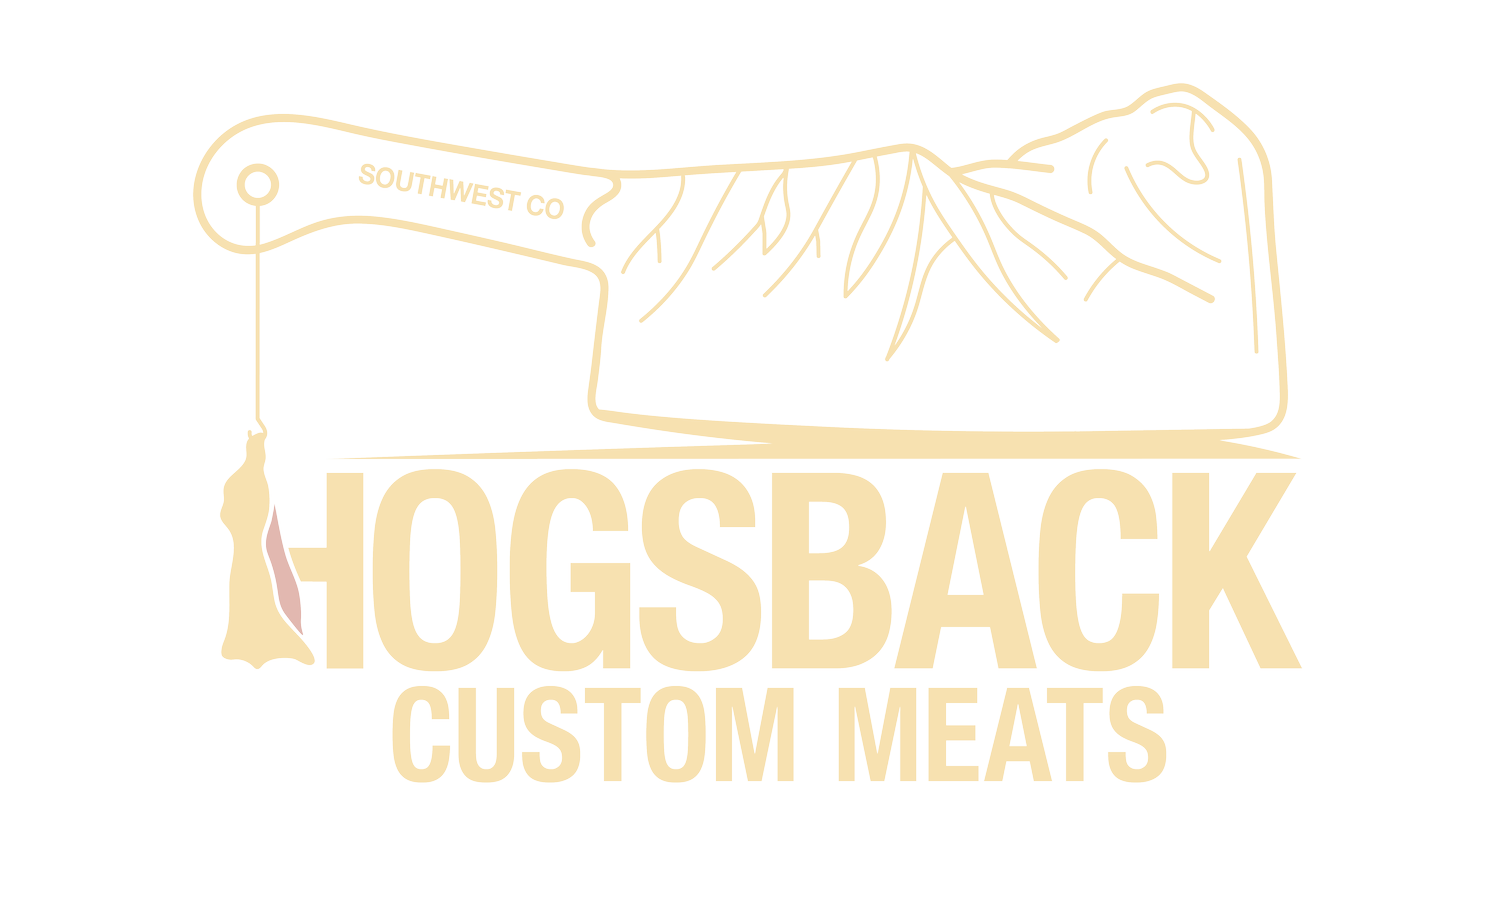 Hogsback Custom Meats